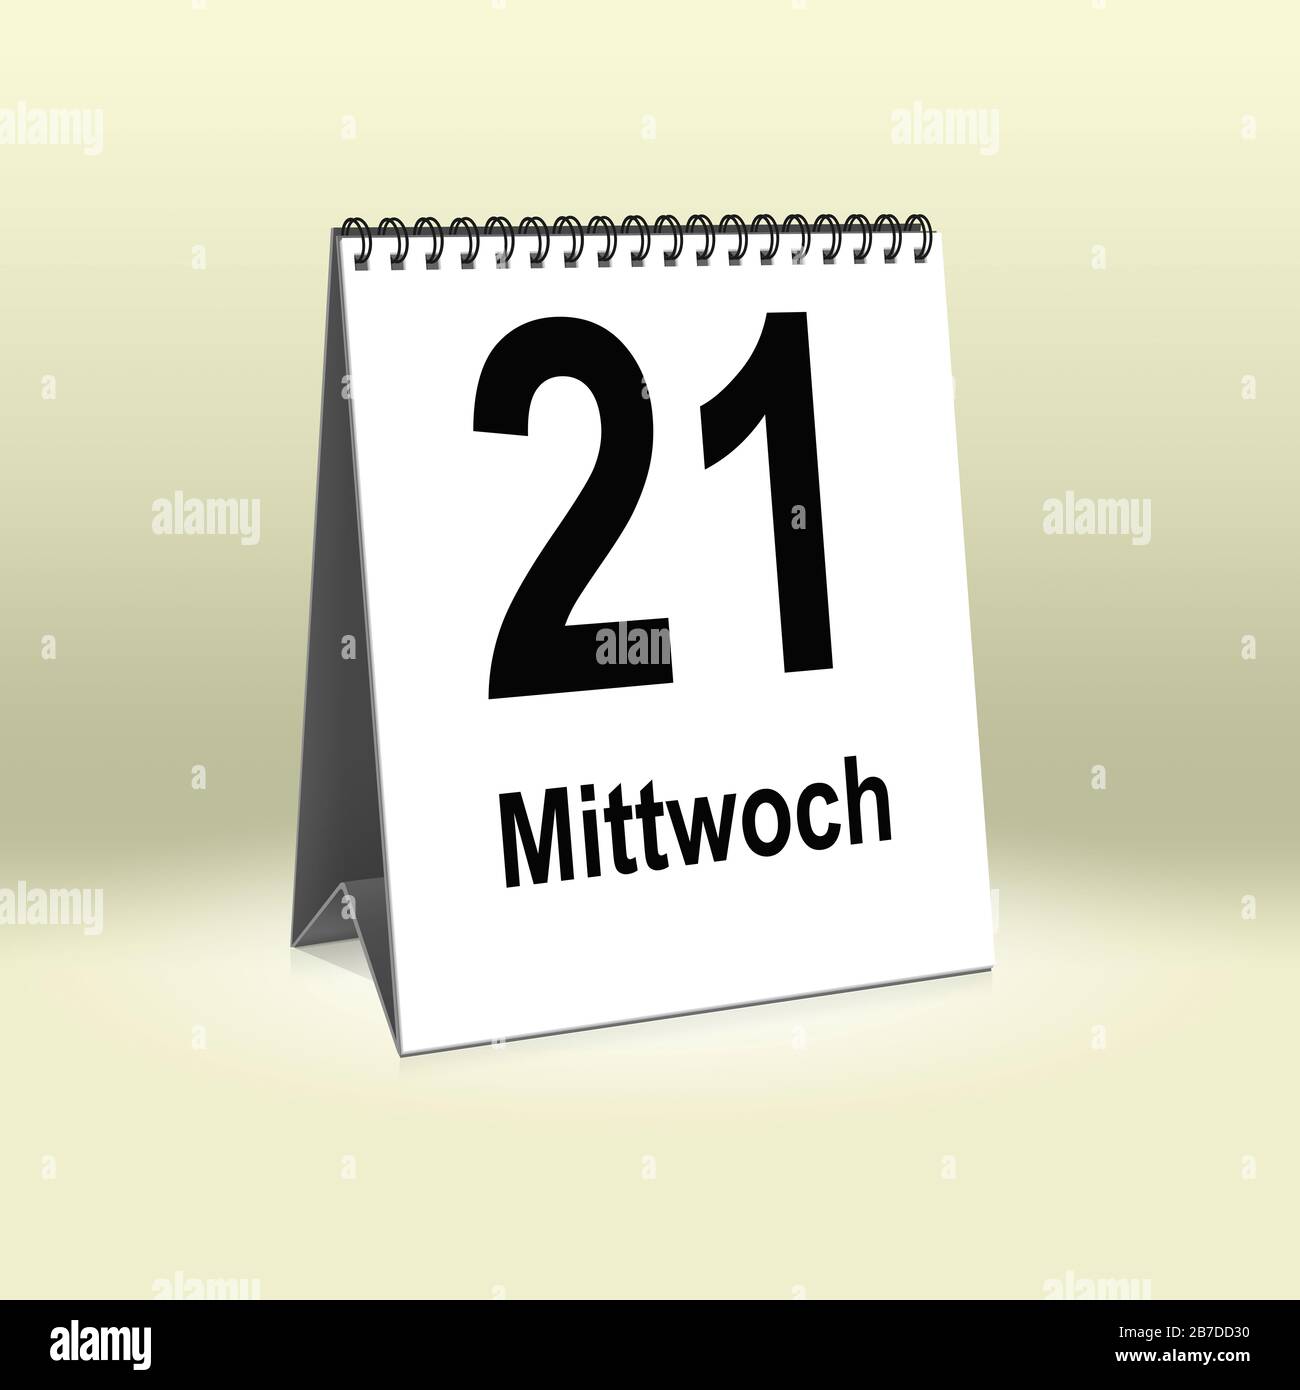 A calendar in German language shows Wednesday 21th | Ein Kalender für den Schreibtisch zeigt Mittwoch 21. Stock Photo